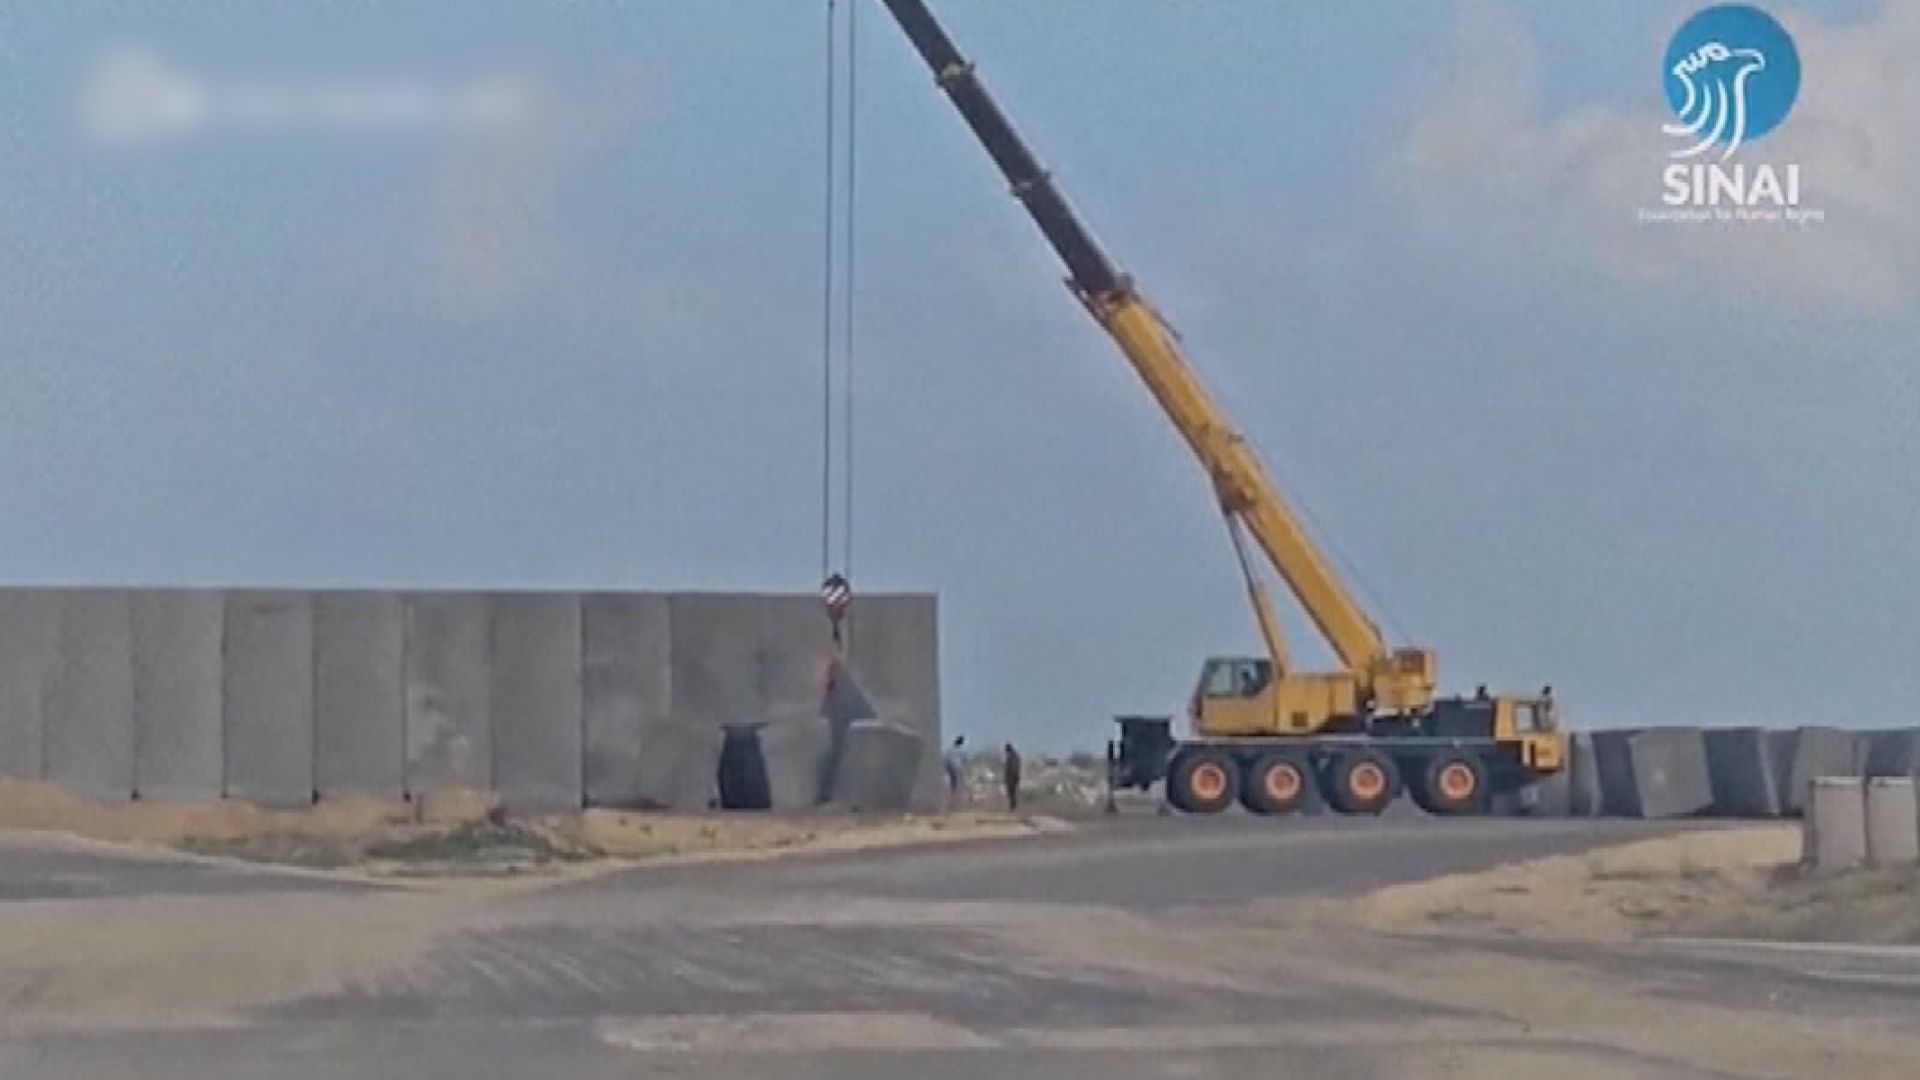 片段顯示埃及在接壤拉法邊境興建圍牆